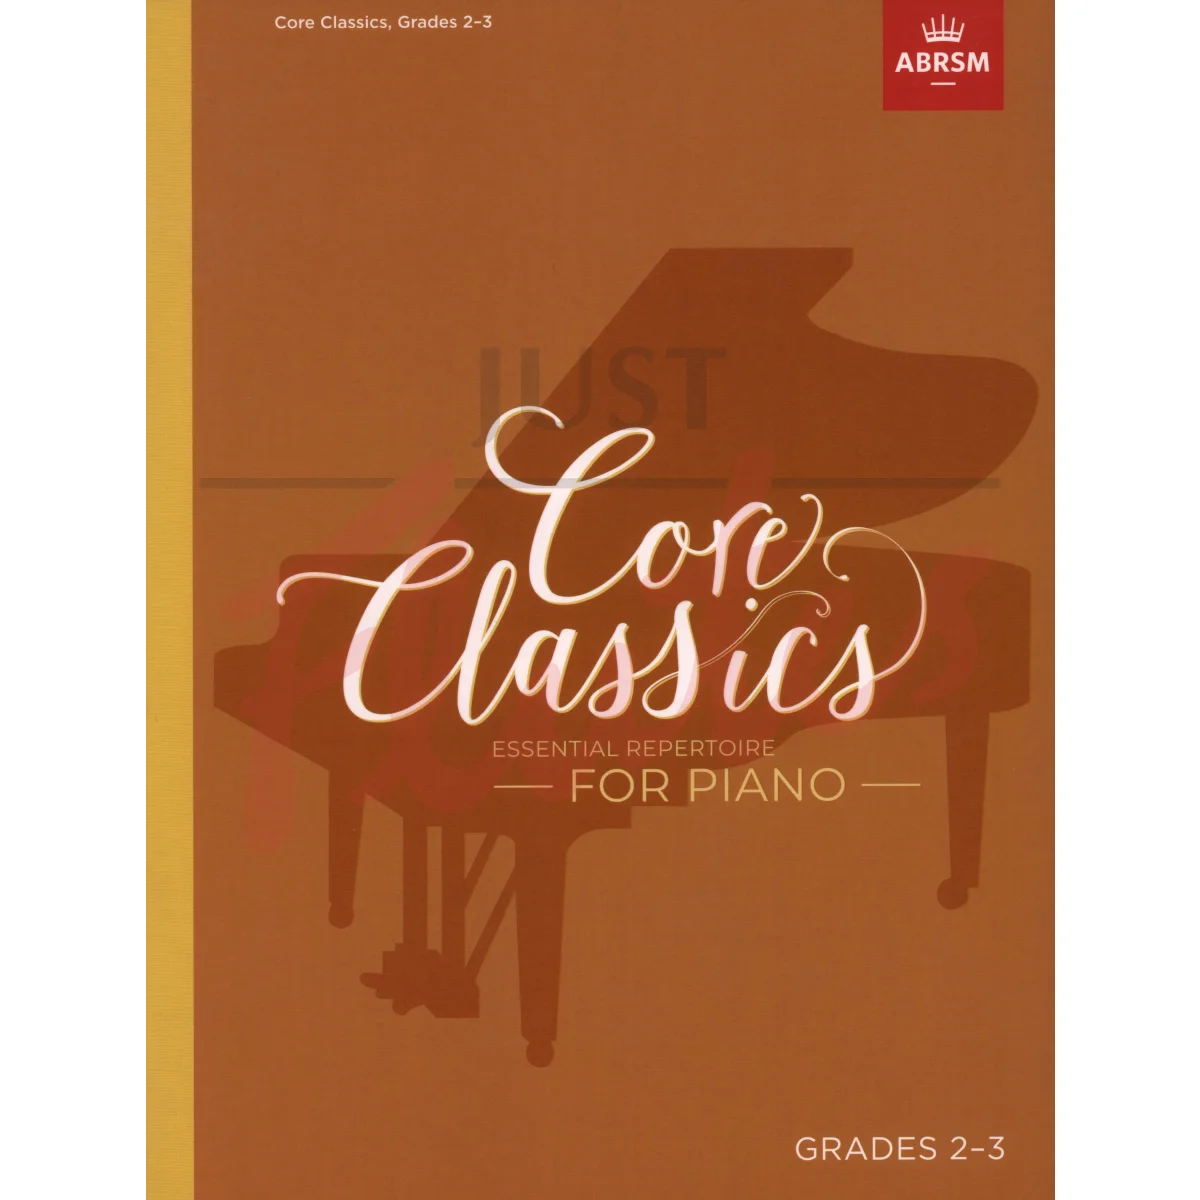 Core Classics Grades 2-3 Essential Repertoire for Piano